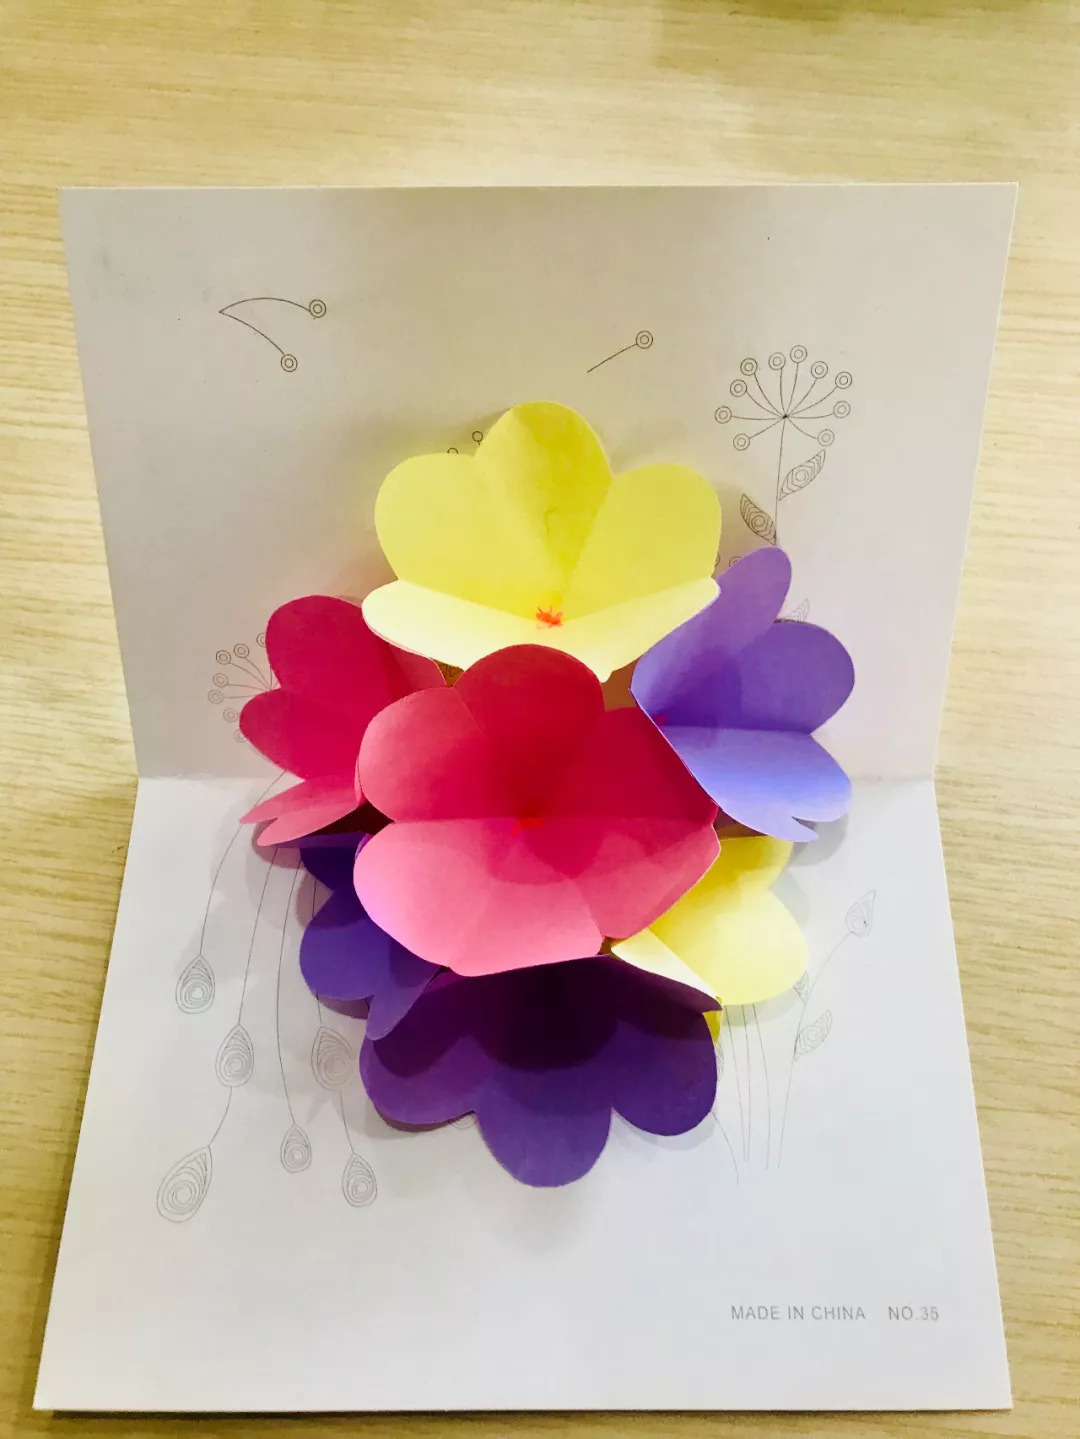 【活动预告】教师节贺卡制作 亲手献给老师的爱